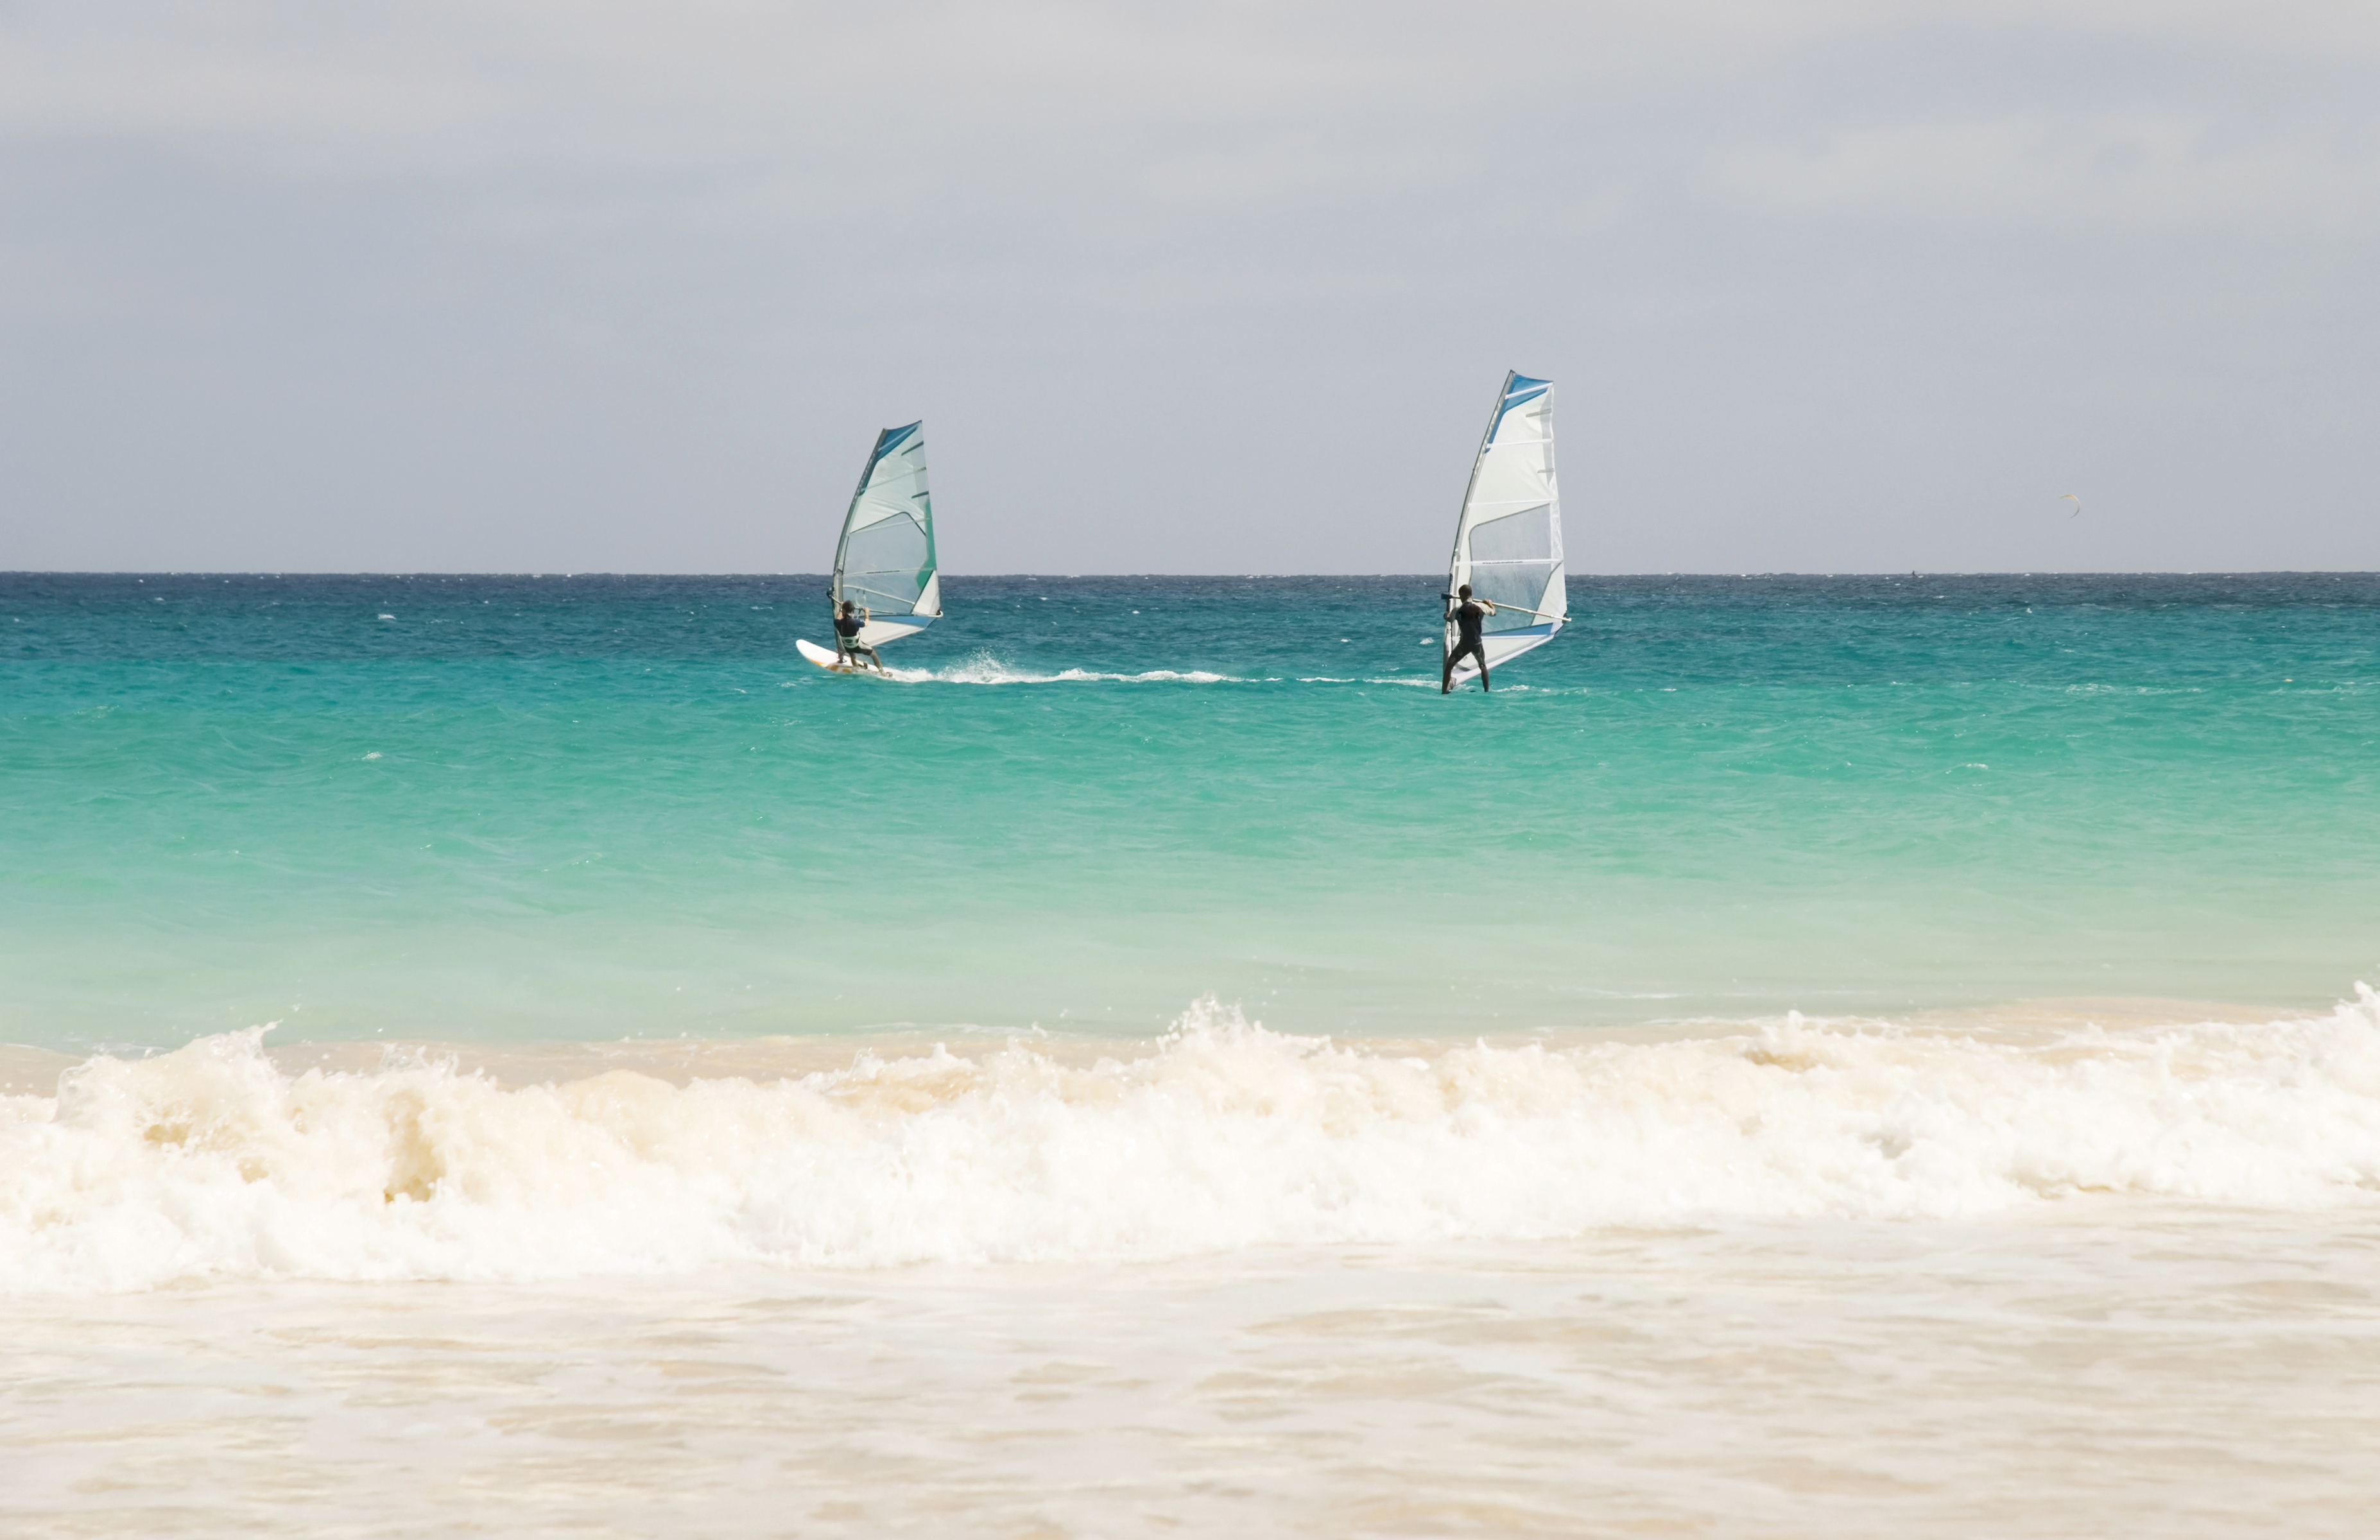 Windsurfers, Cape Verde